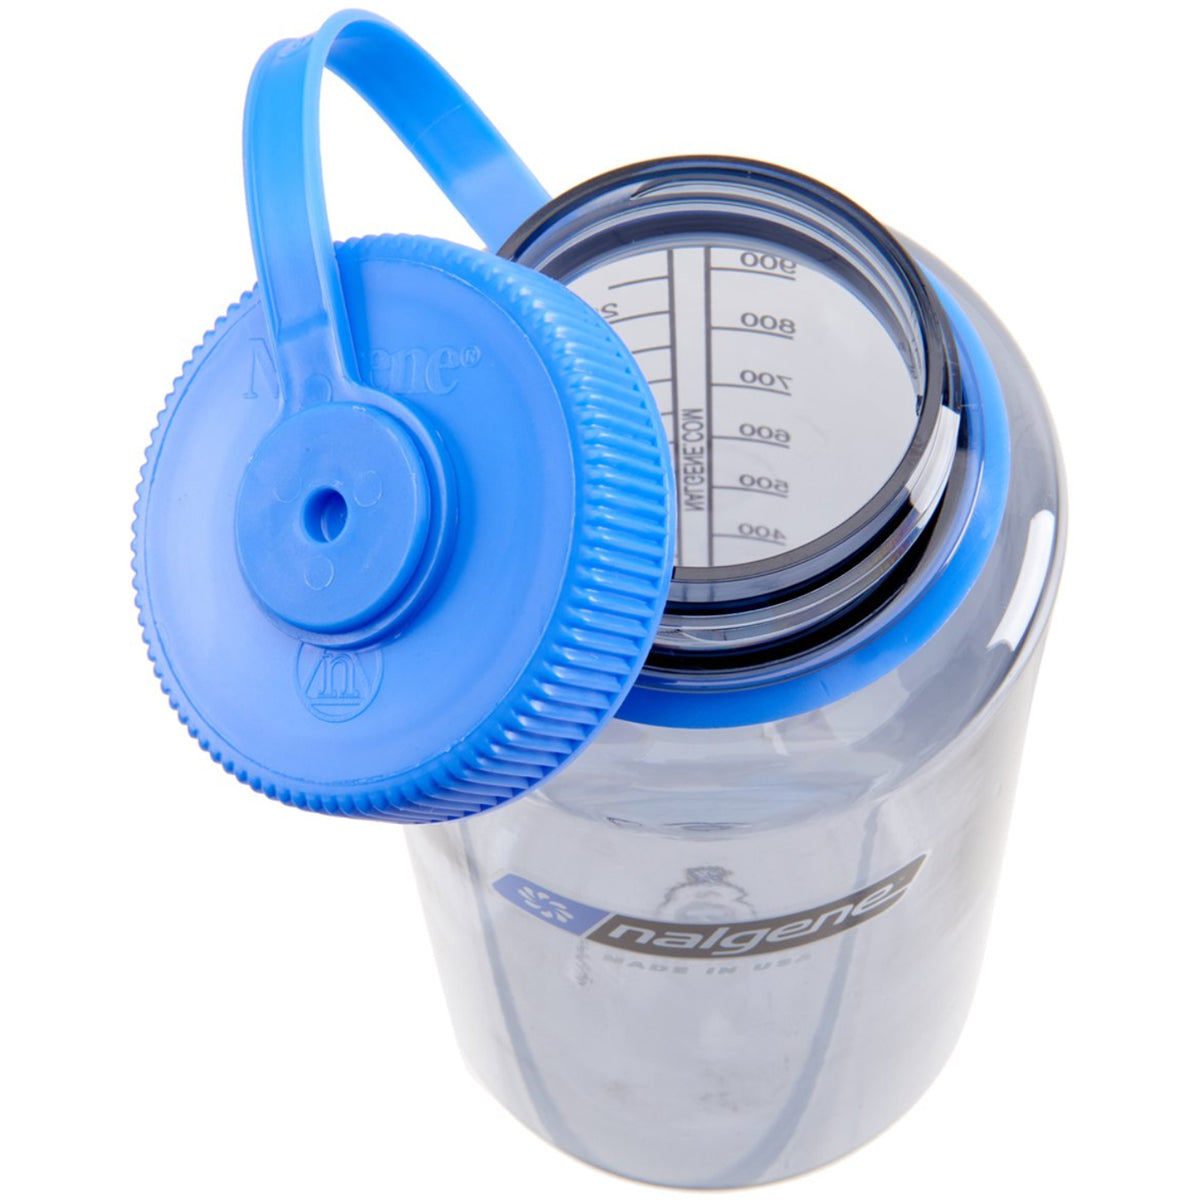 Nalgene Sustain 32 oz. Tritan Wide Mouth Water Bottle - Gray/Blue Nalgene